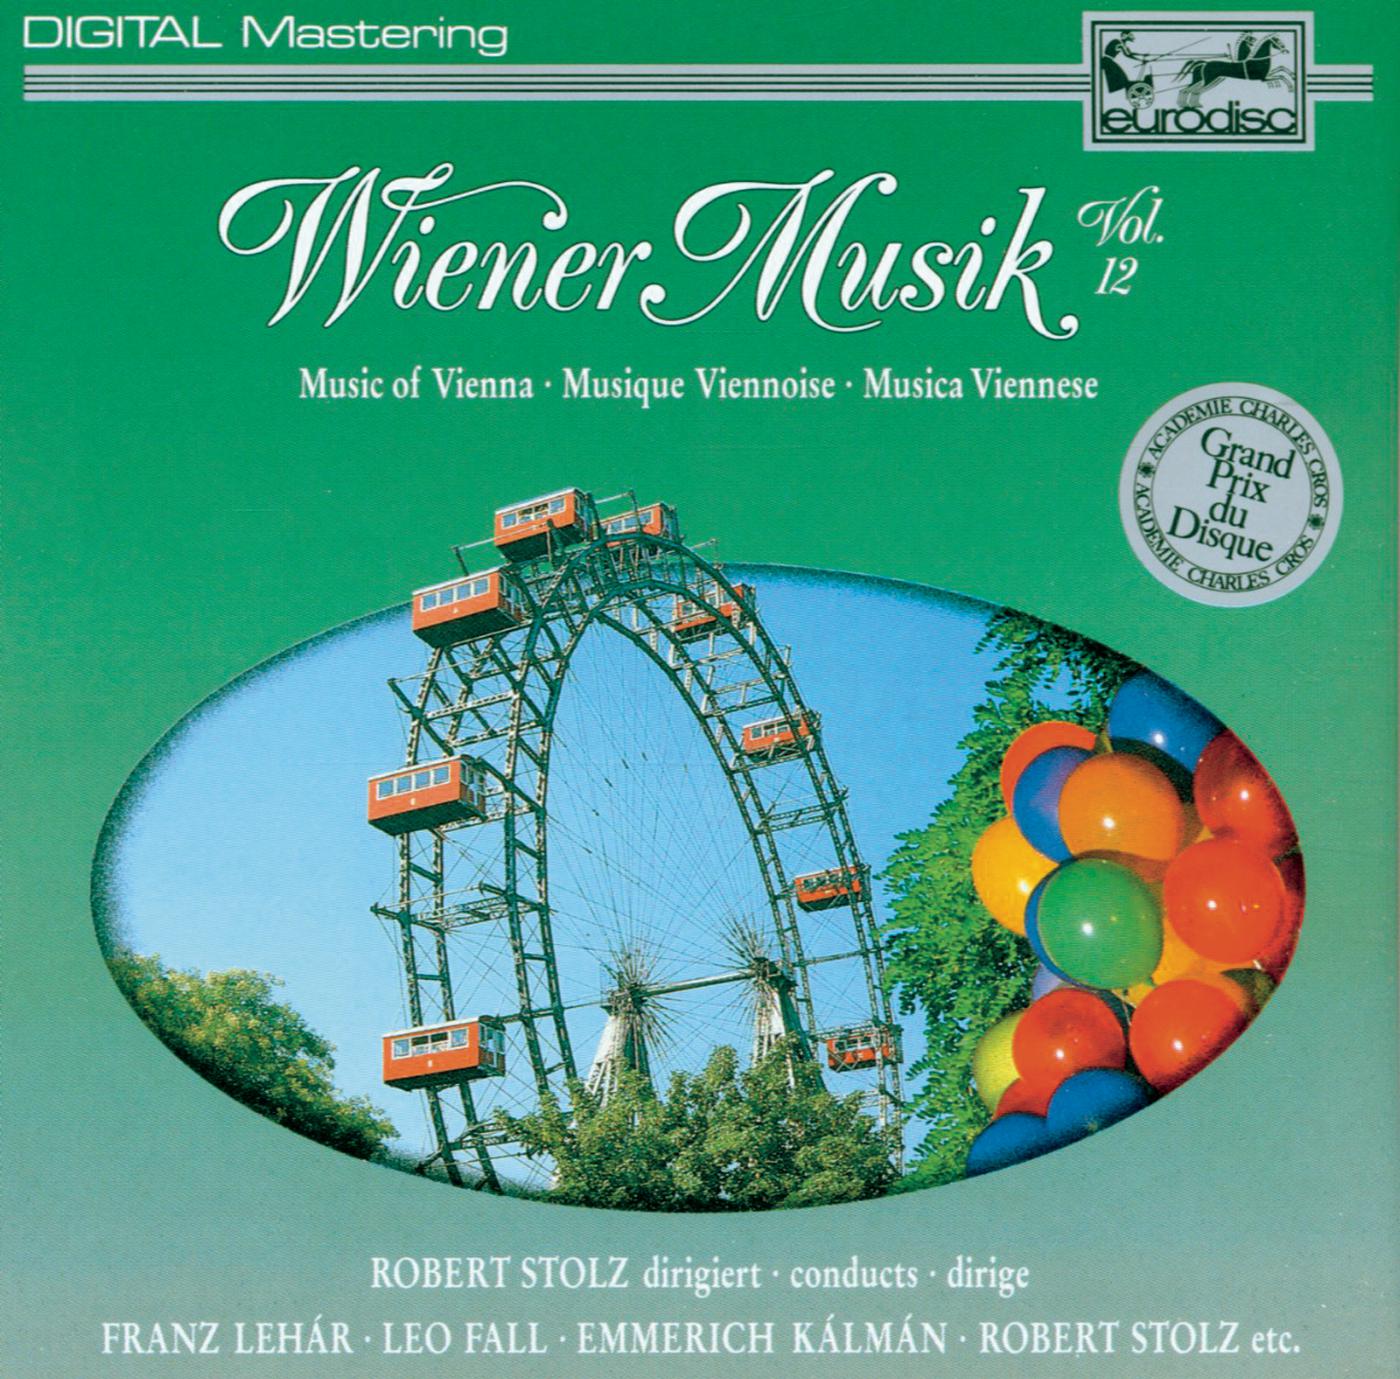 Wiener Musik Vol. 12